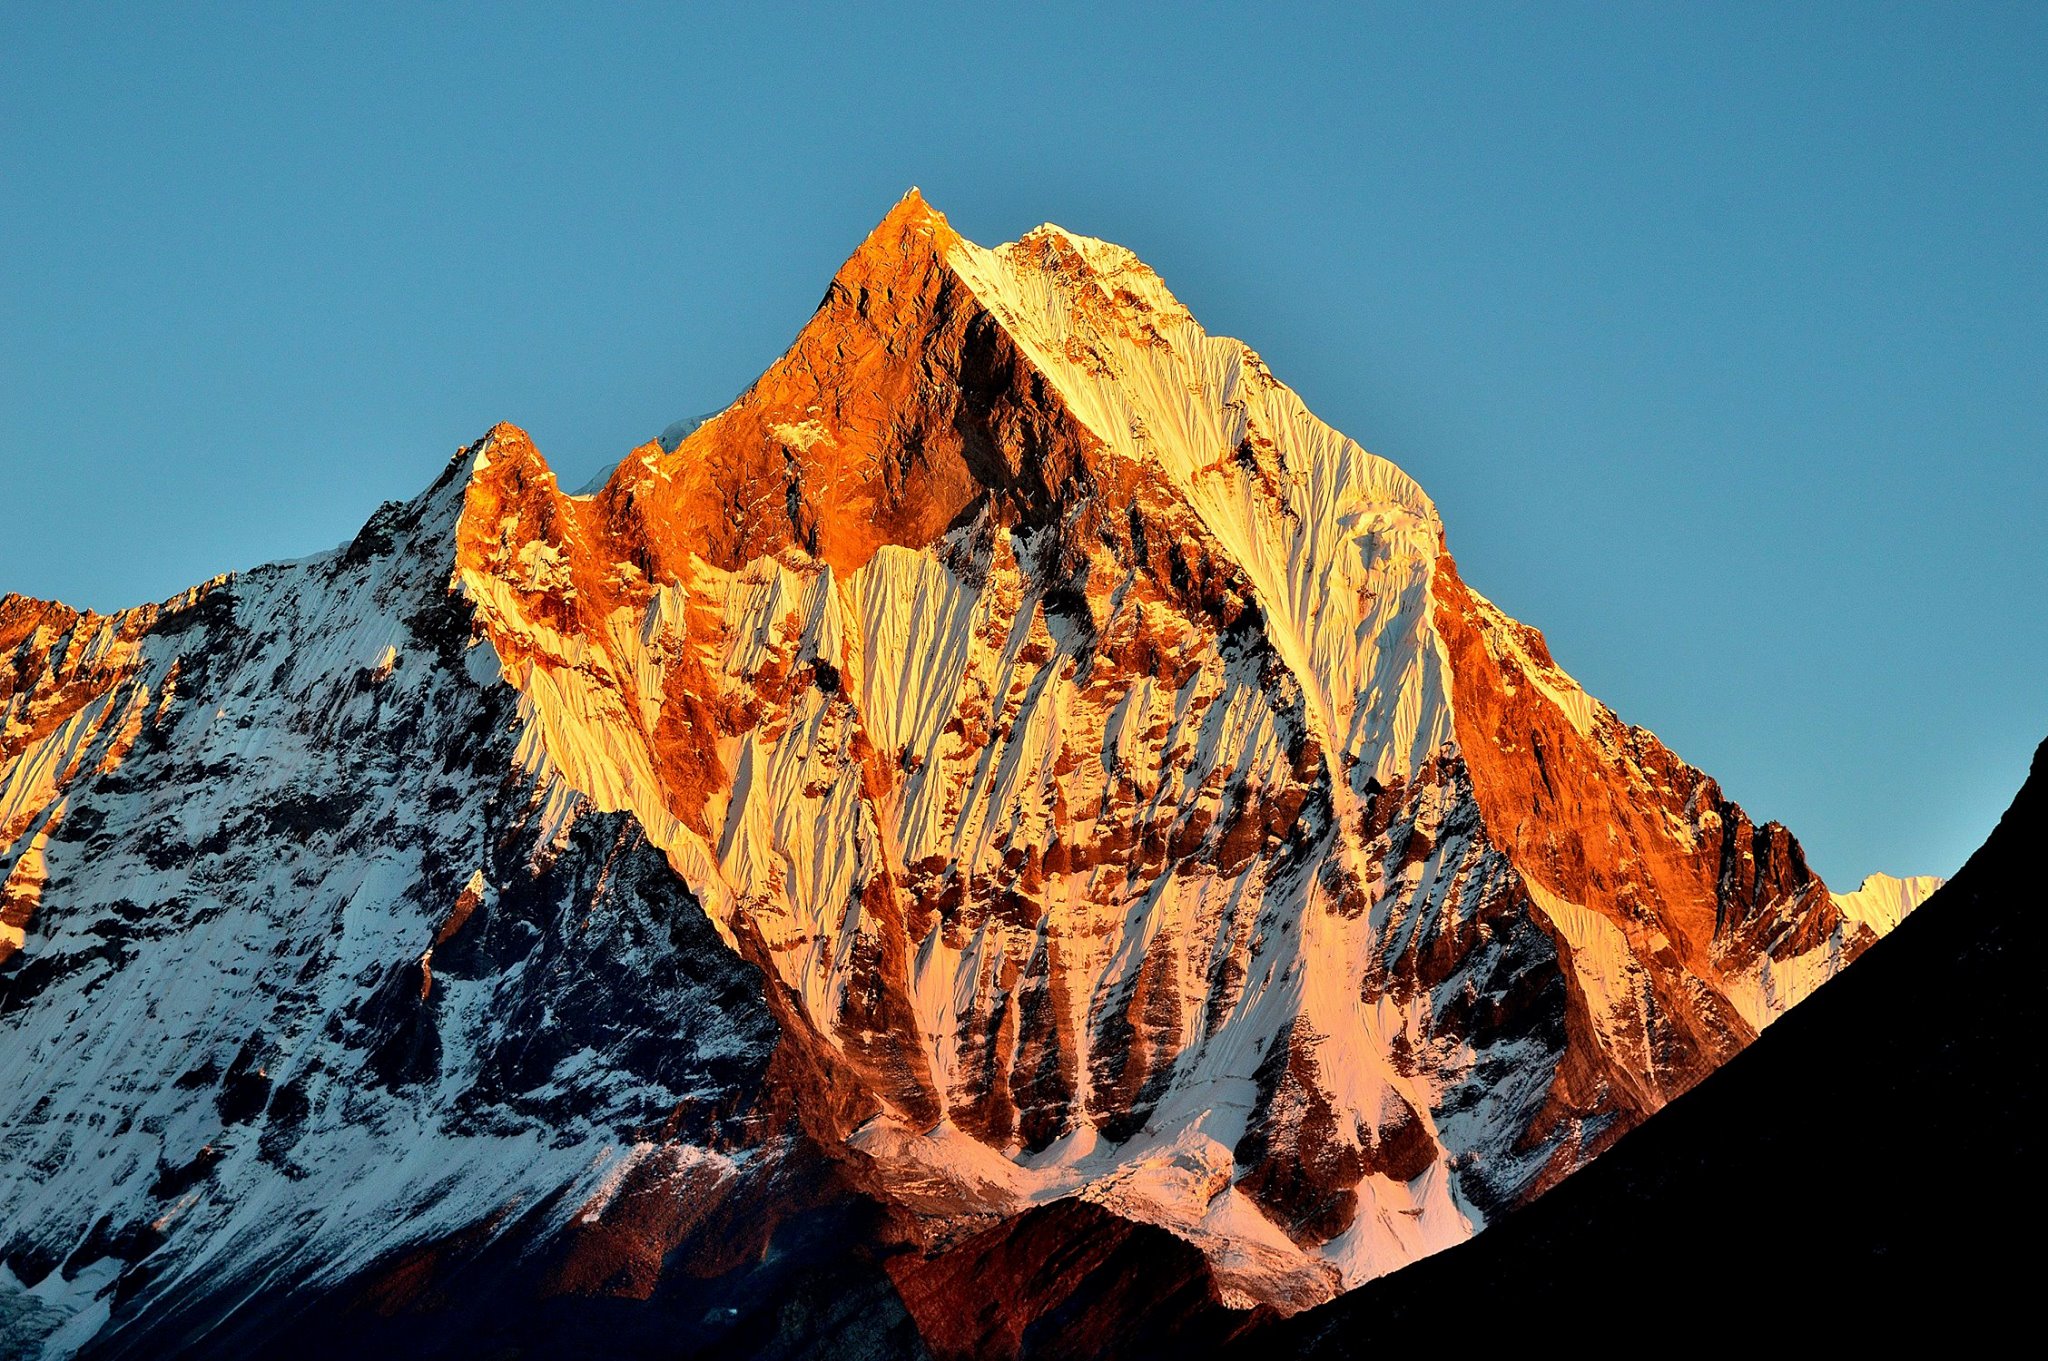 Gorakshepst -Last Shelter in Everest